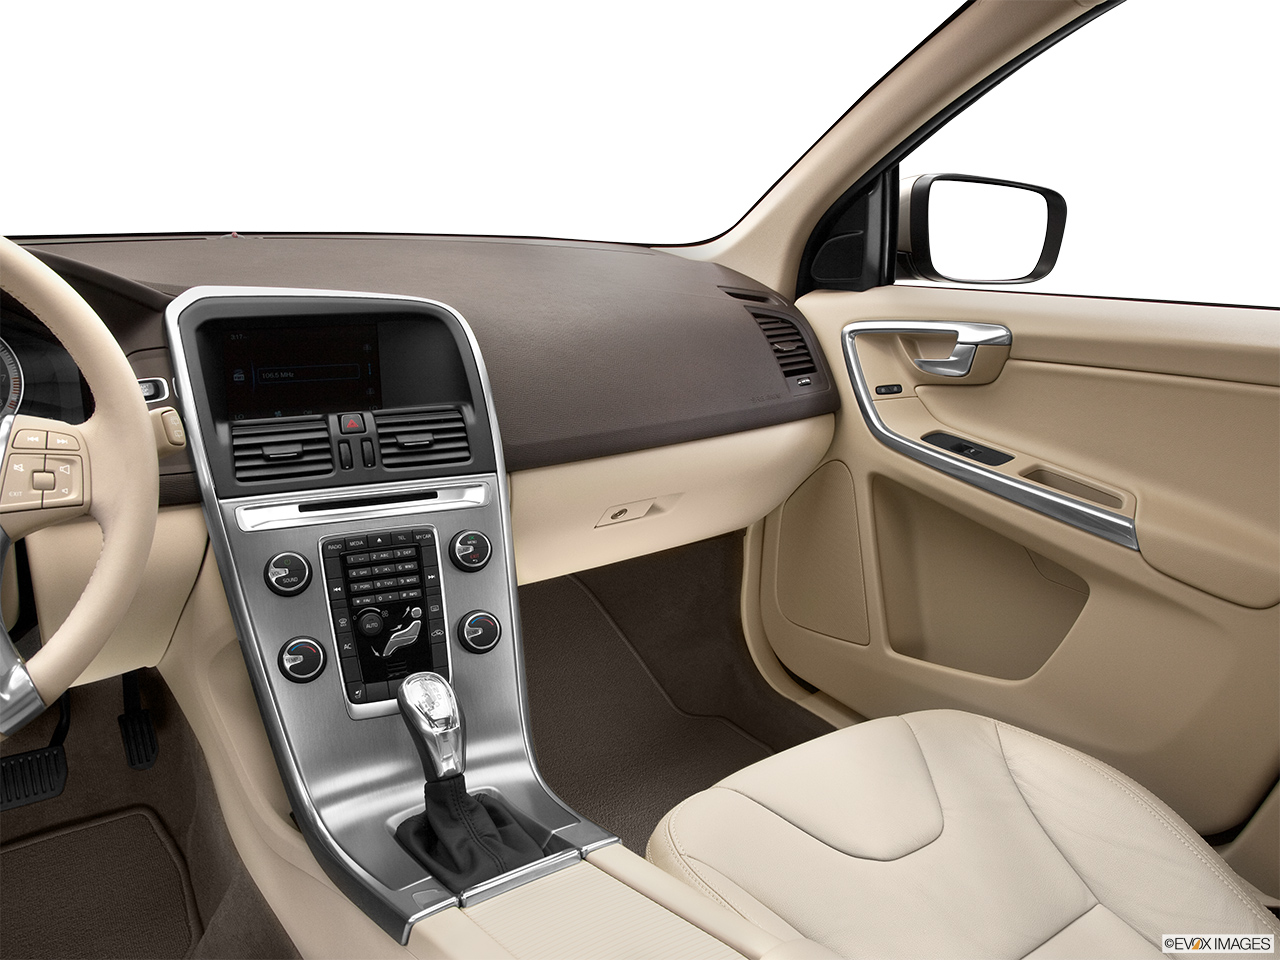 2013 Volvo XC60 3.2 FWD Premier Plus Center Console/Passenger Side. 